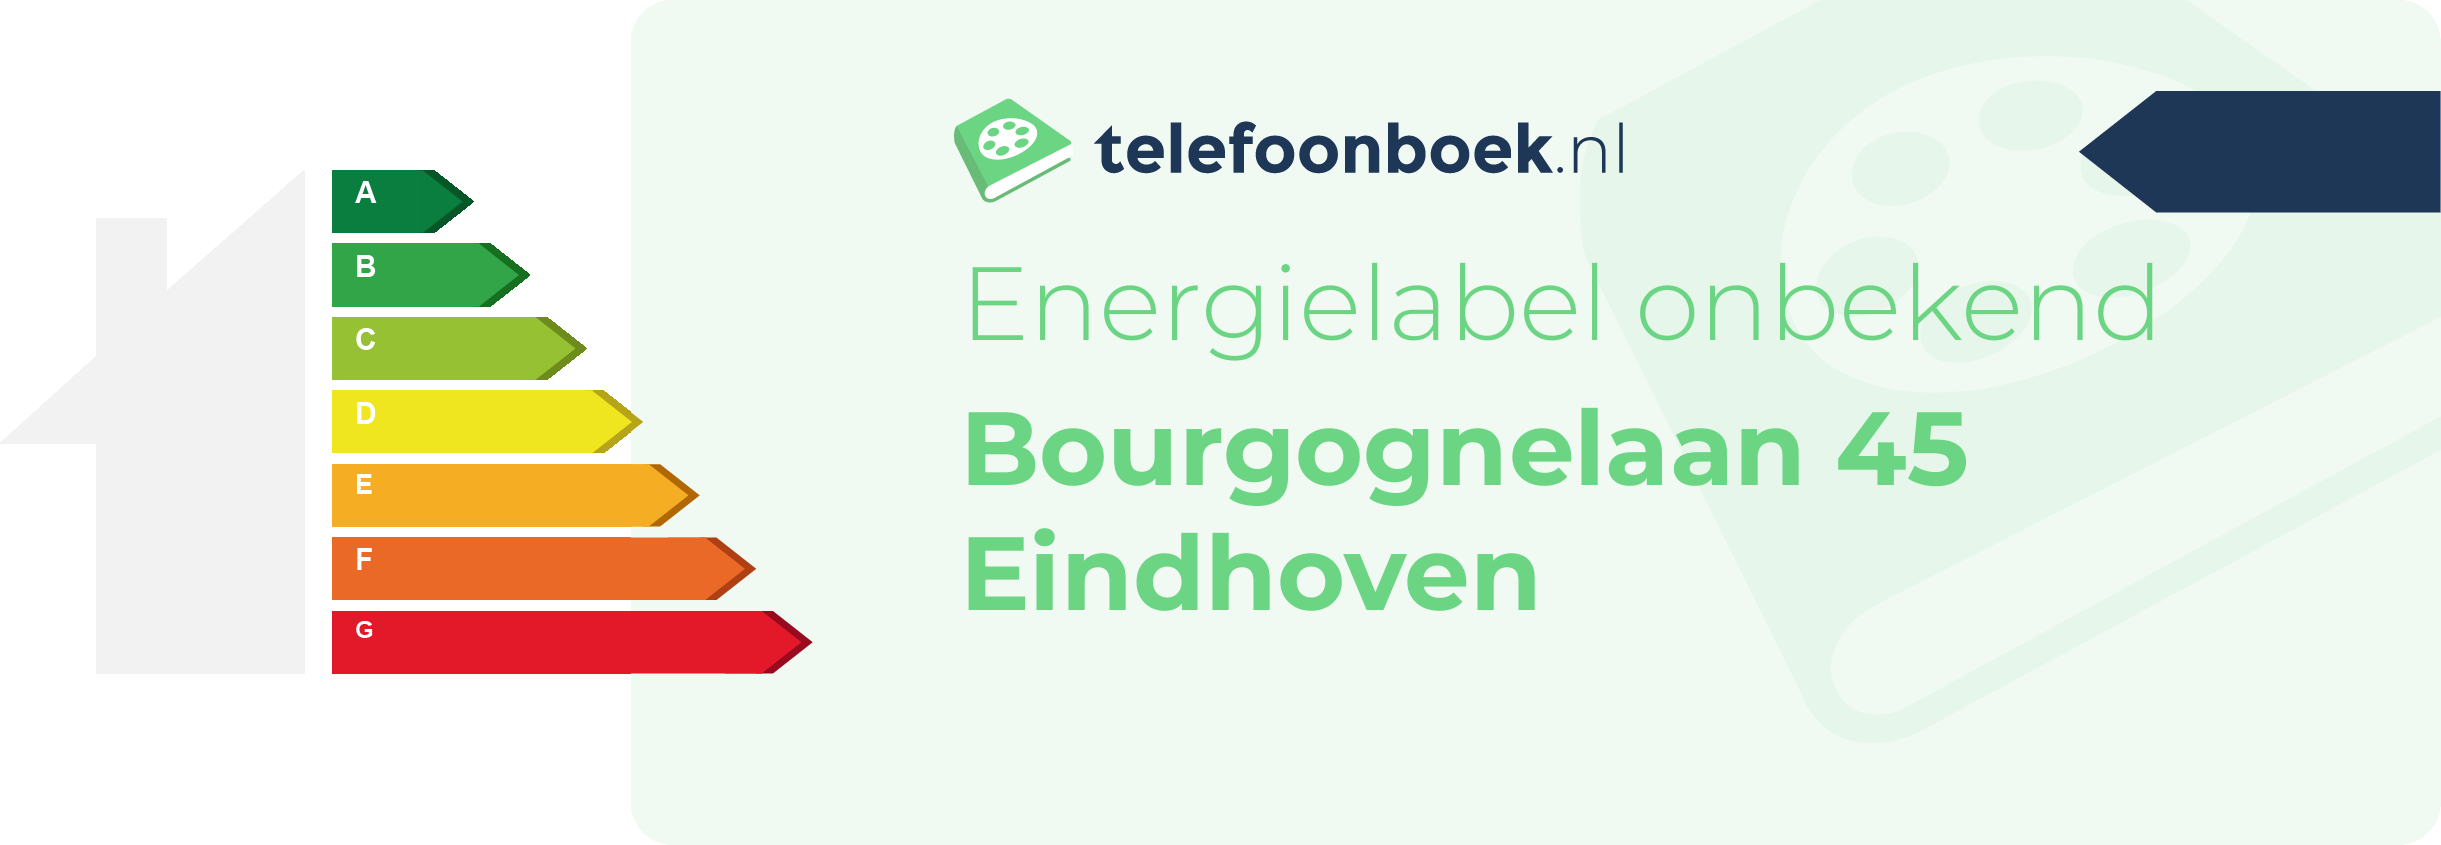 Energielabel Bourgognelaan 45 Eindhoven